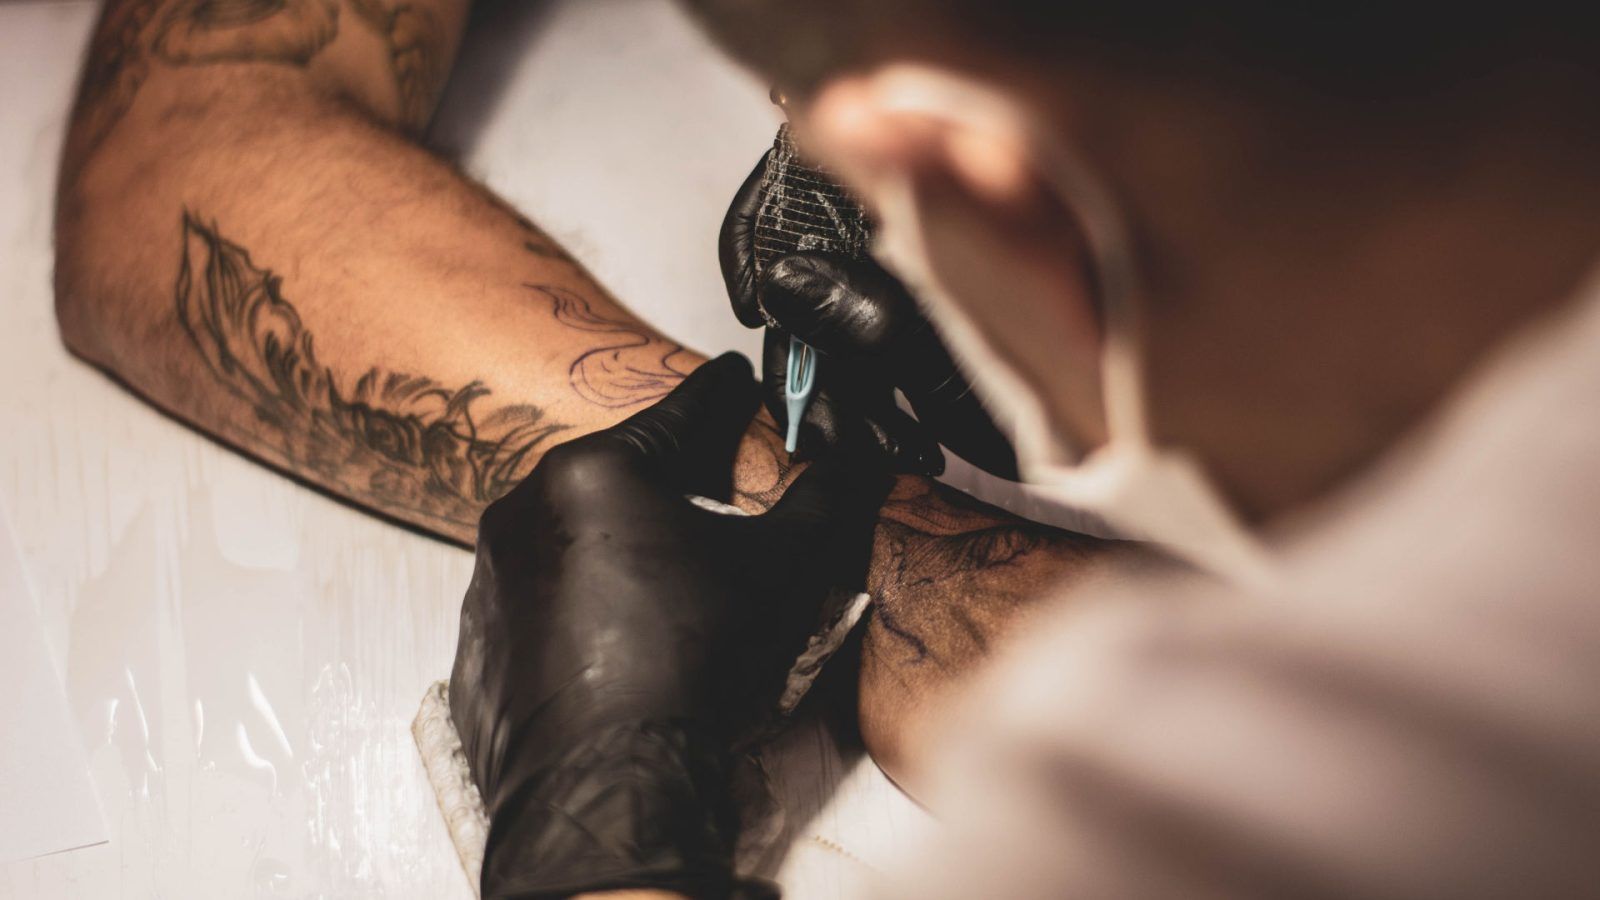 Sam Smith Debuts Tattoo Tribute to Non-Binary Gender Identity